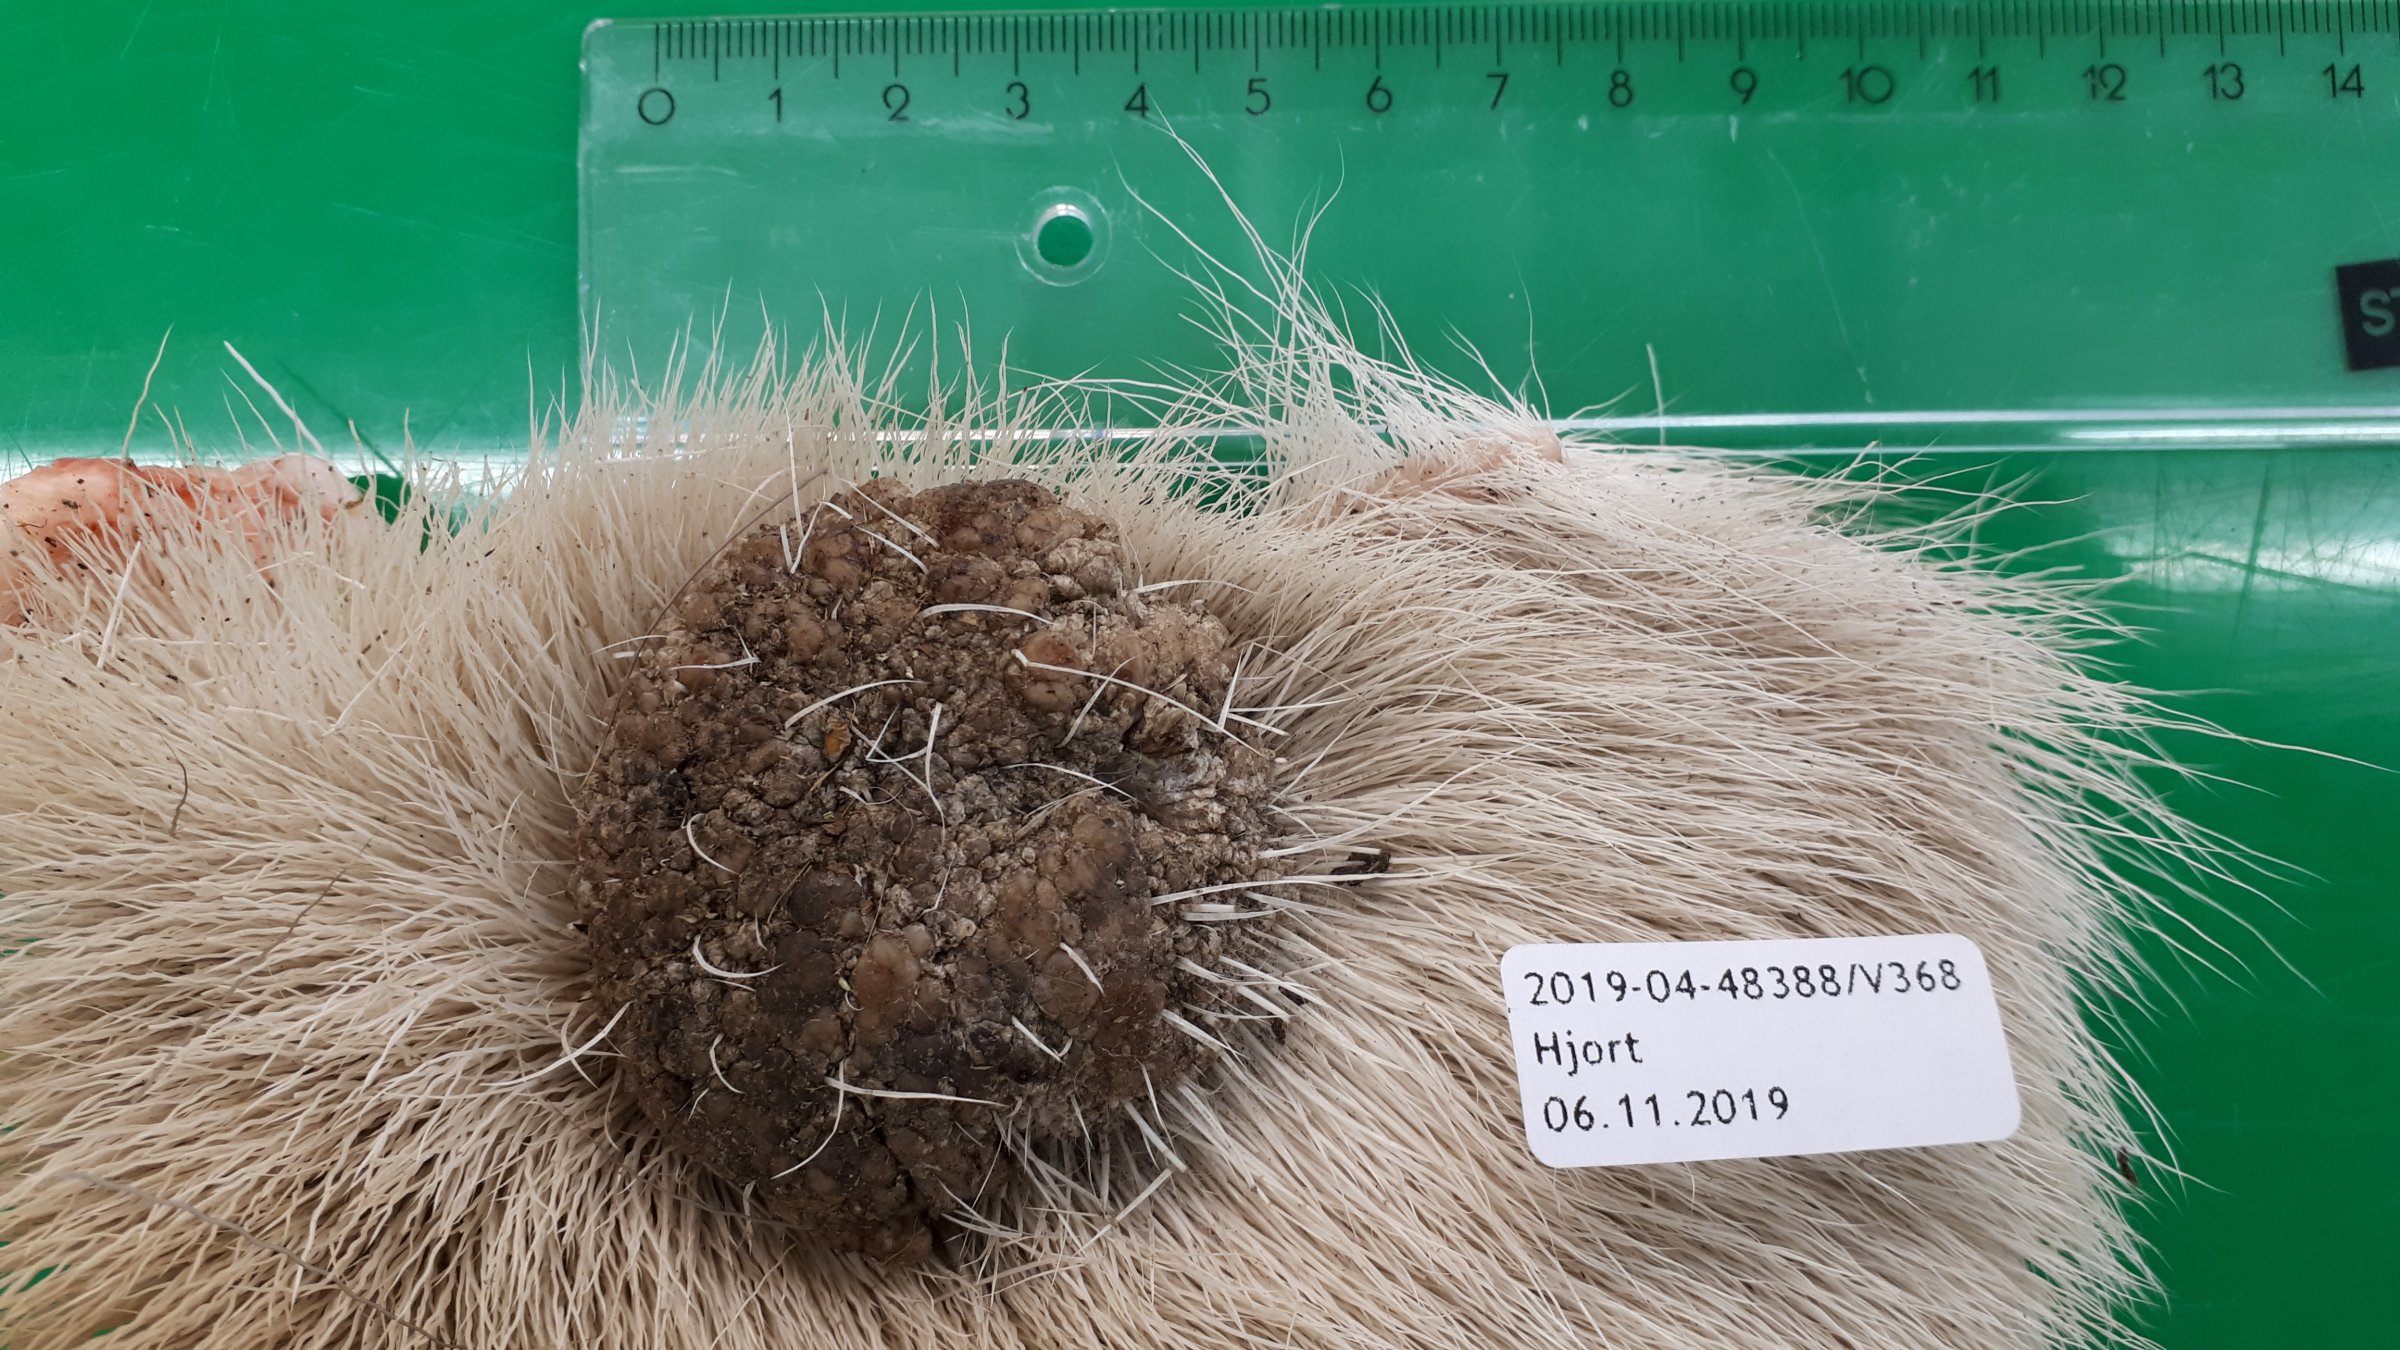 Hudvorte årsaka av papillomavirus, lokalisert på låret hjå ein hjort felt hausten 2019. Dyret hadde også ei mindre hudvorte på den ene bogen. Foto: Jon Hagelin, Veterinærinstituttet